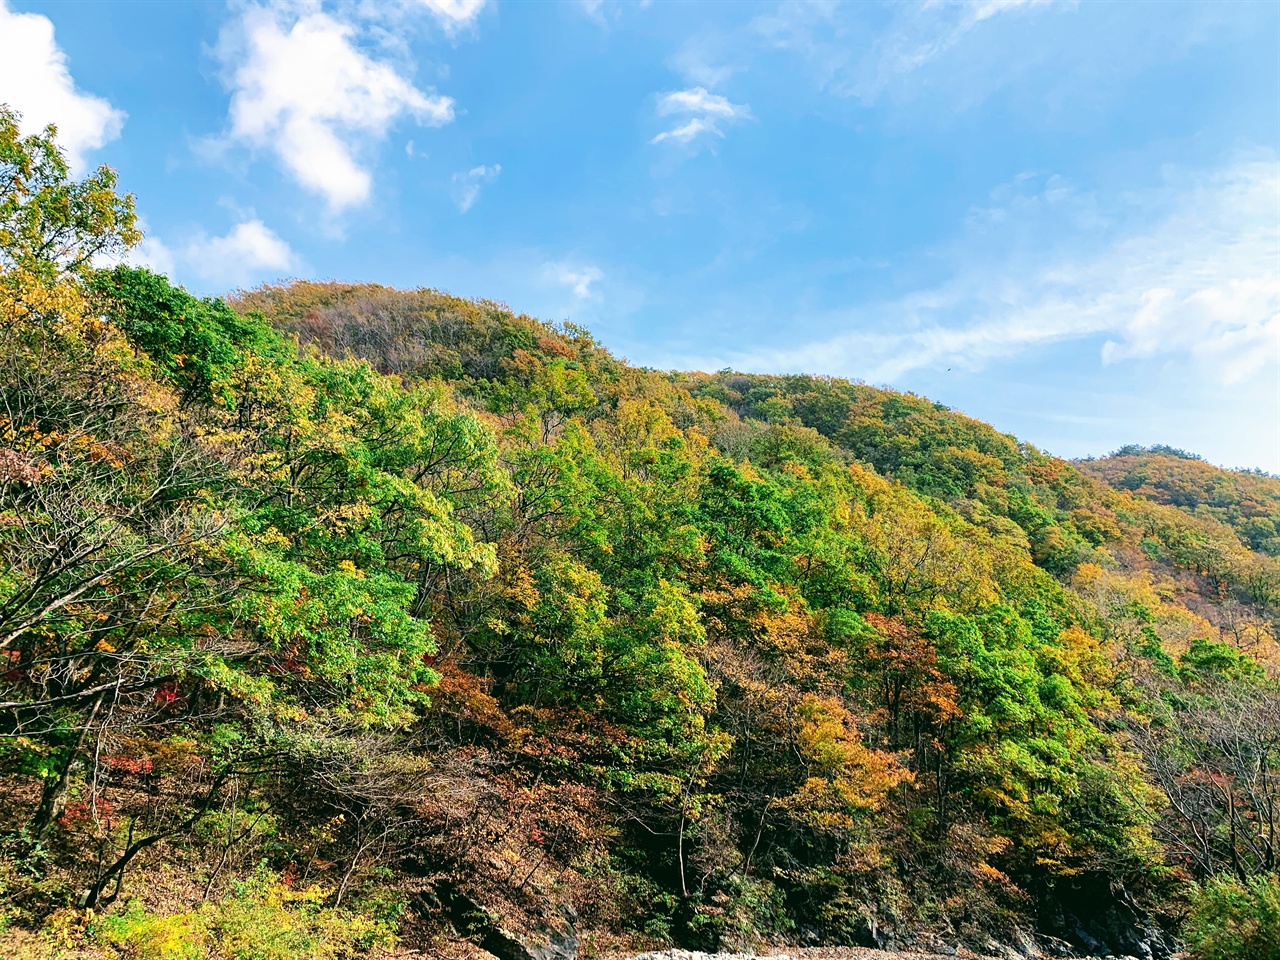 가을하늘 아래로 울긋불긋 각양 각색의 색깔이 펼쳐진 가을산이 화려합니다. 